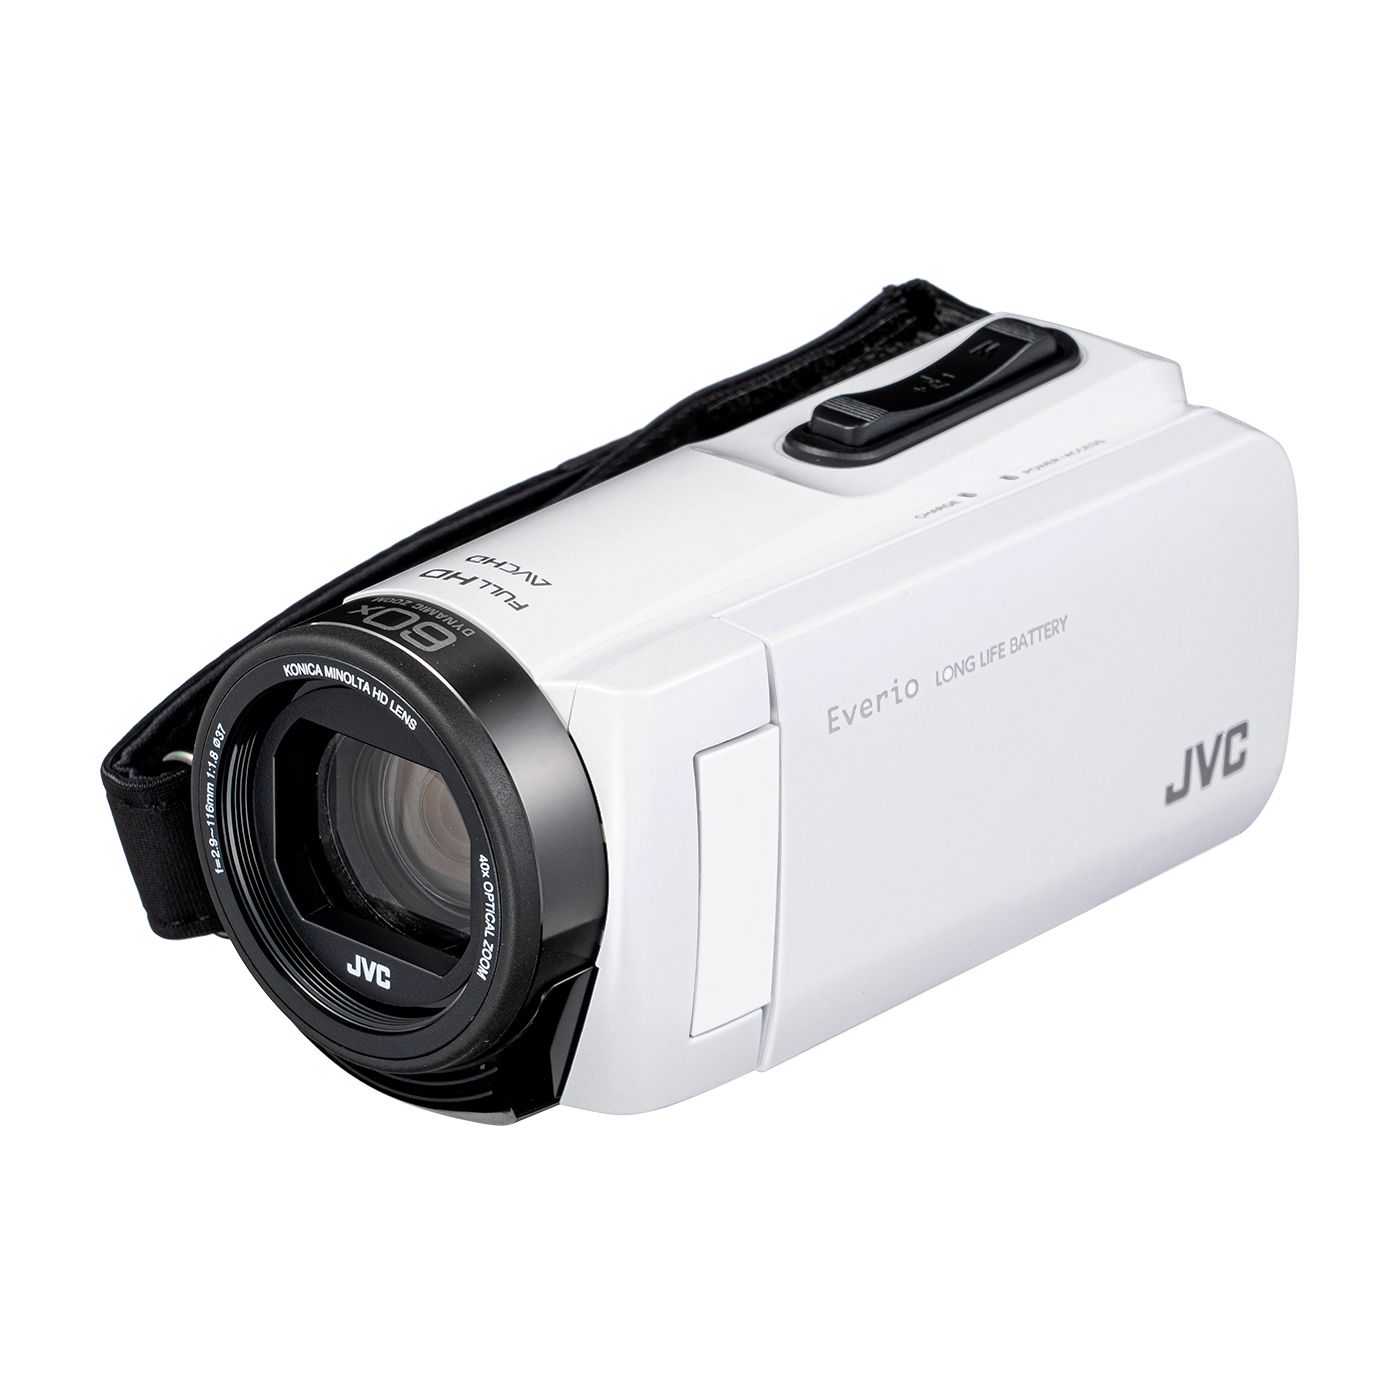 11520円 限定価格セール Jvc ビデオカメラ